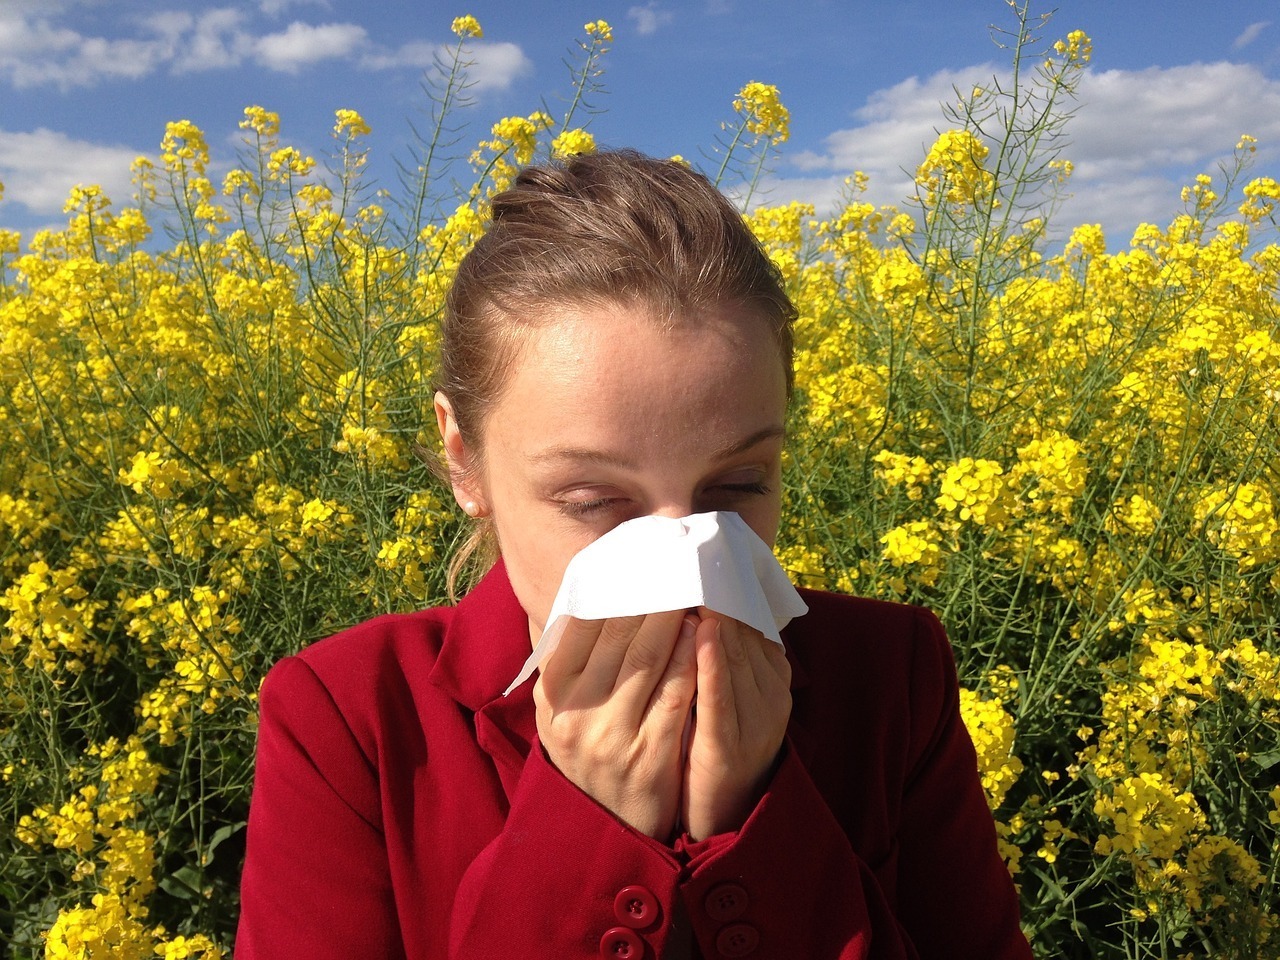 lutter contre les allergies sans médicaments